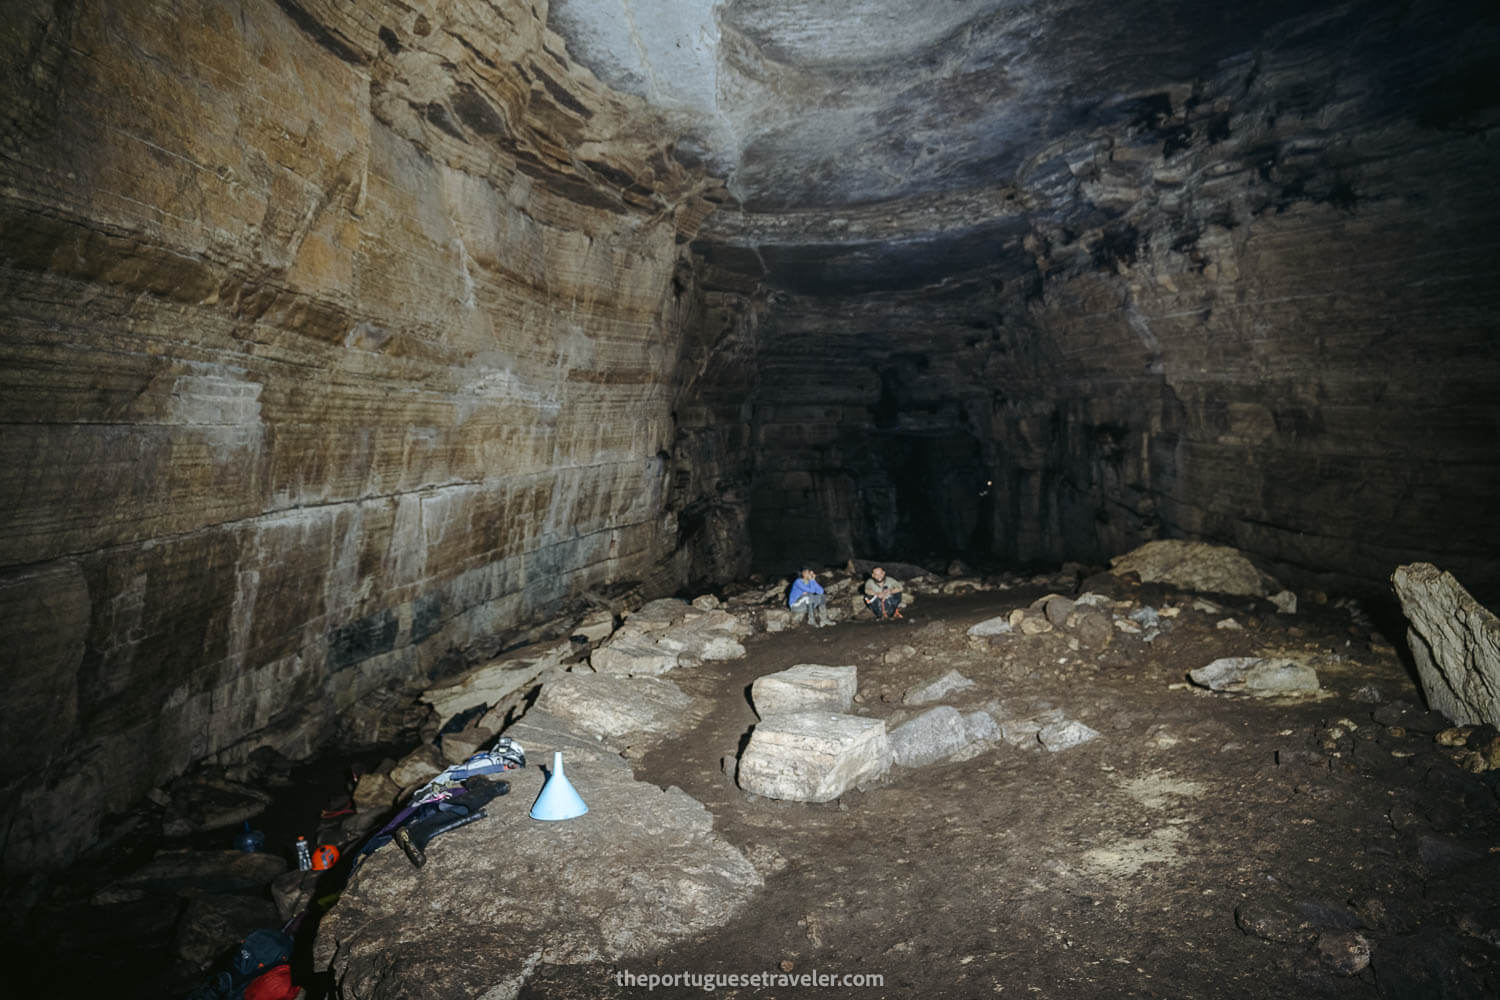 The main vault of the Cueva de Los Tayos where we camped